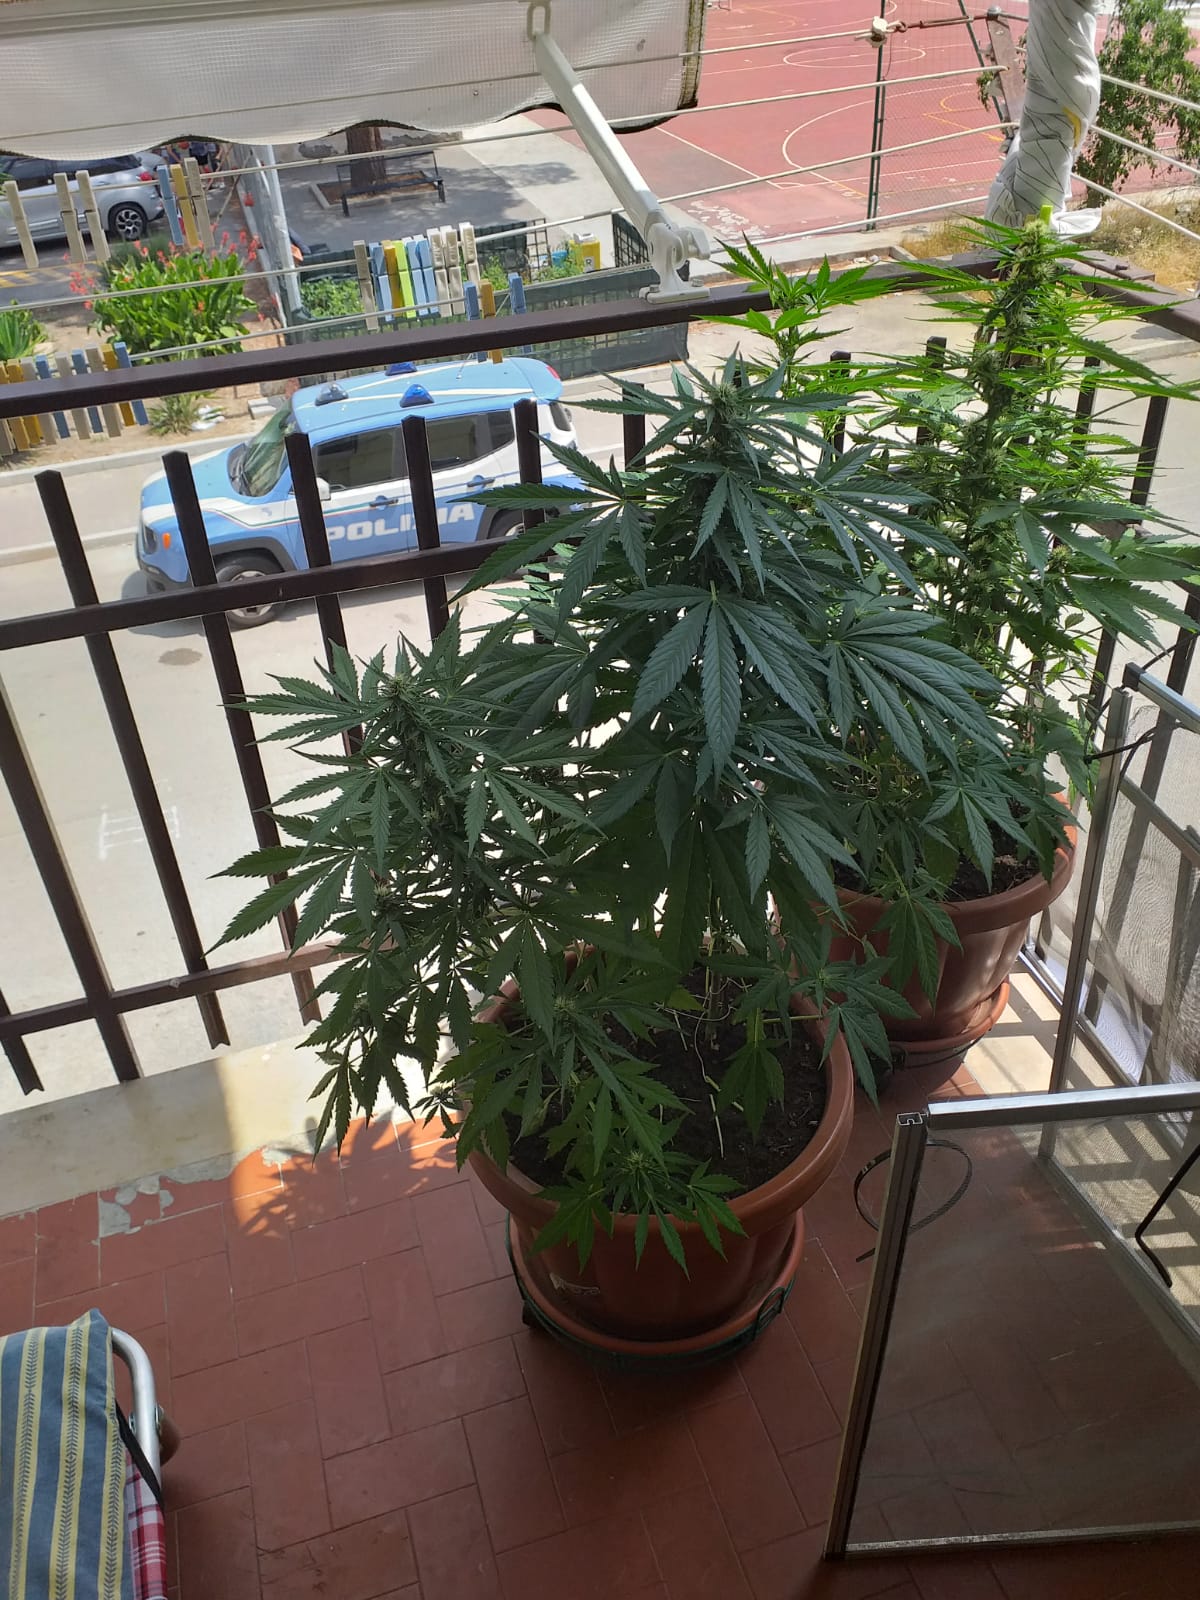 Benevento| Coltiva marijuana sul balcone: arrestato dalla Polizia